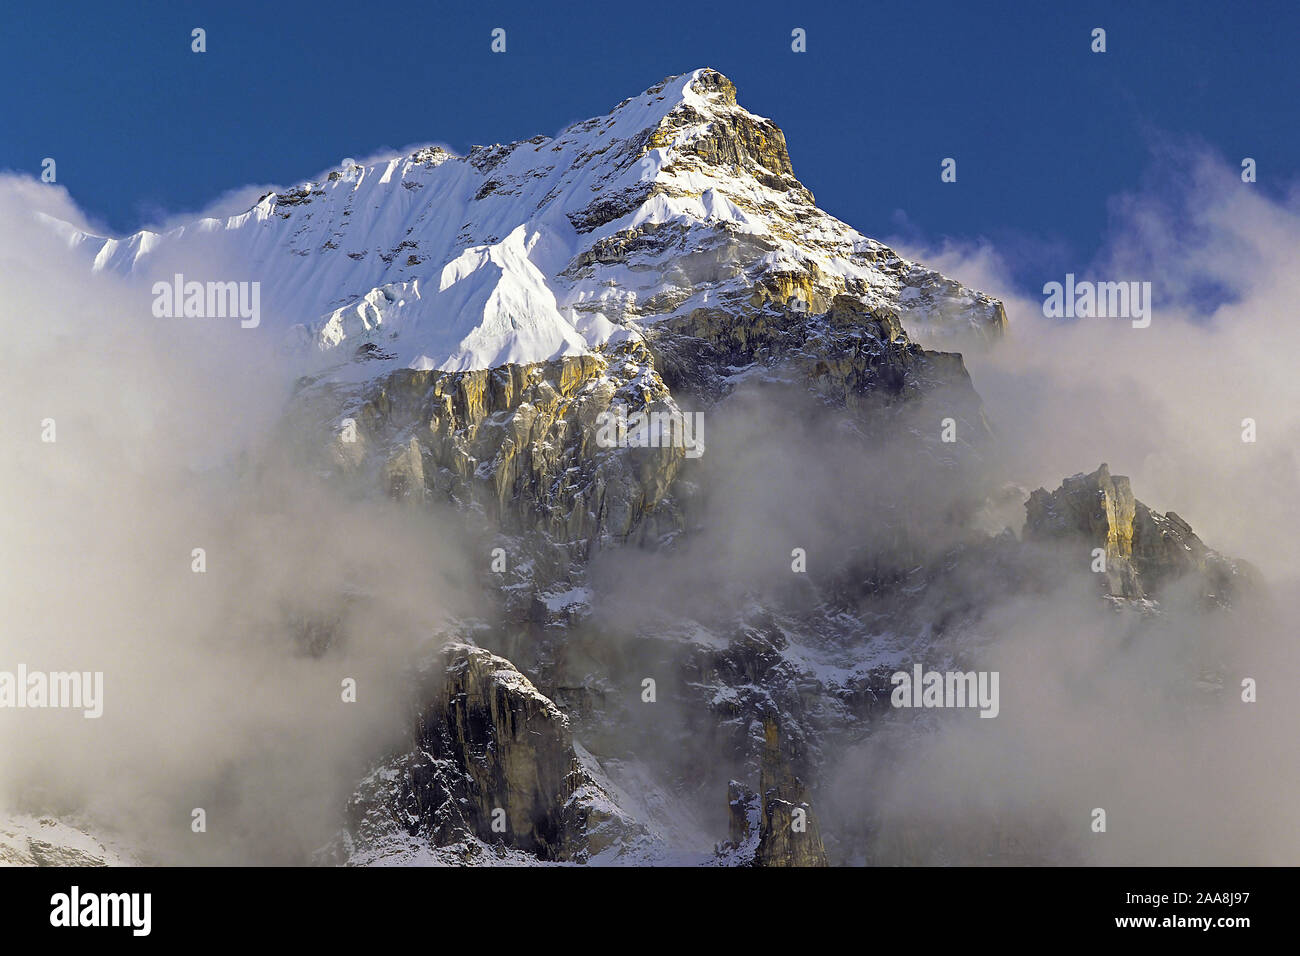 Por la tarde la niebla y las nubes se reúnen alrededor de los espectaculares riscos y la cumbre de un pico sin nombre en la región oriental del Nepal Kangchenjunga Foto de stock